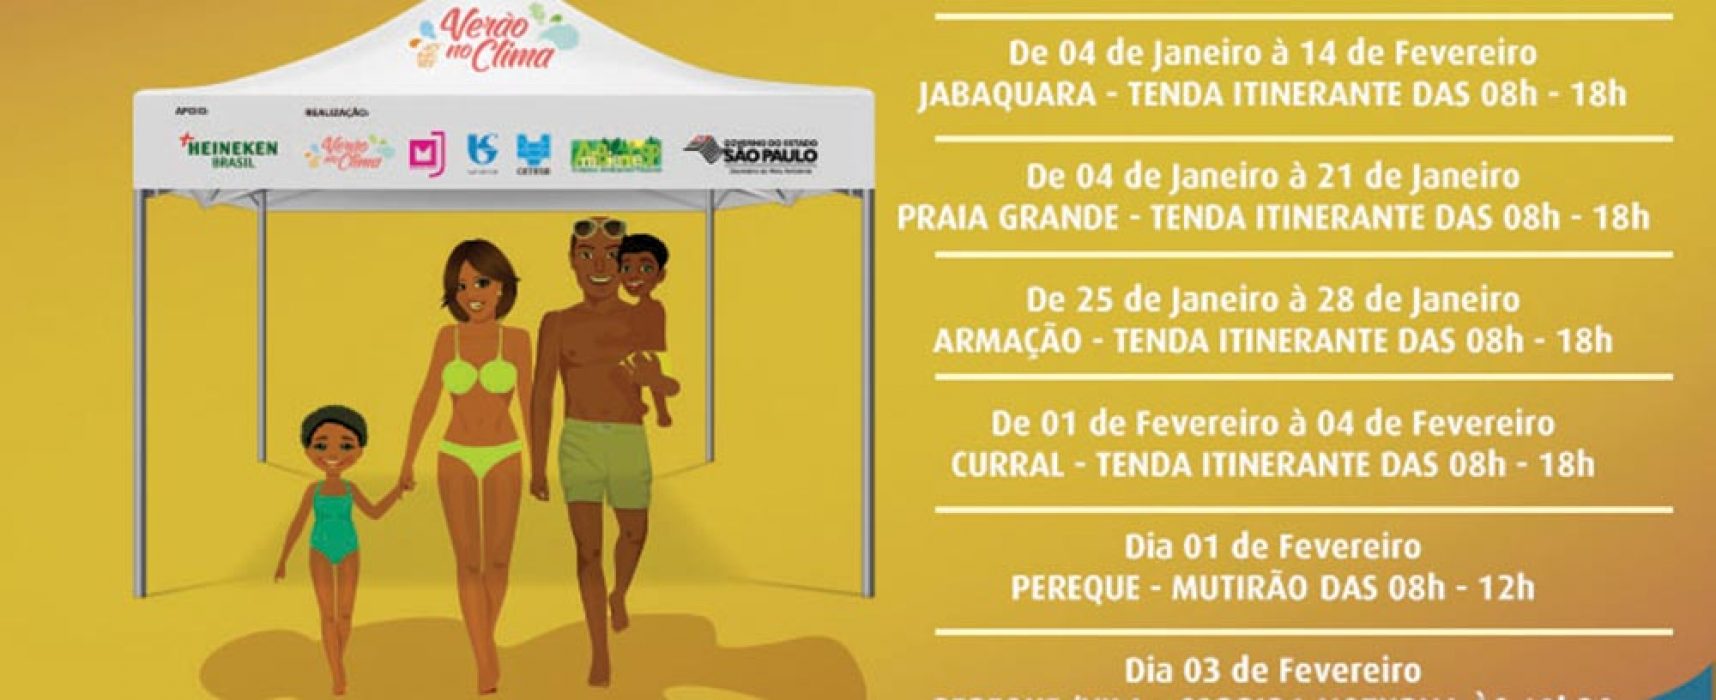 HEINEKEN Brasil apoia projeto “Verão no Clima” no litoral Paulista